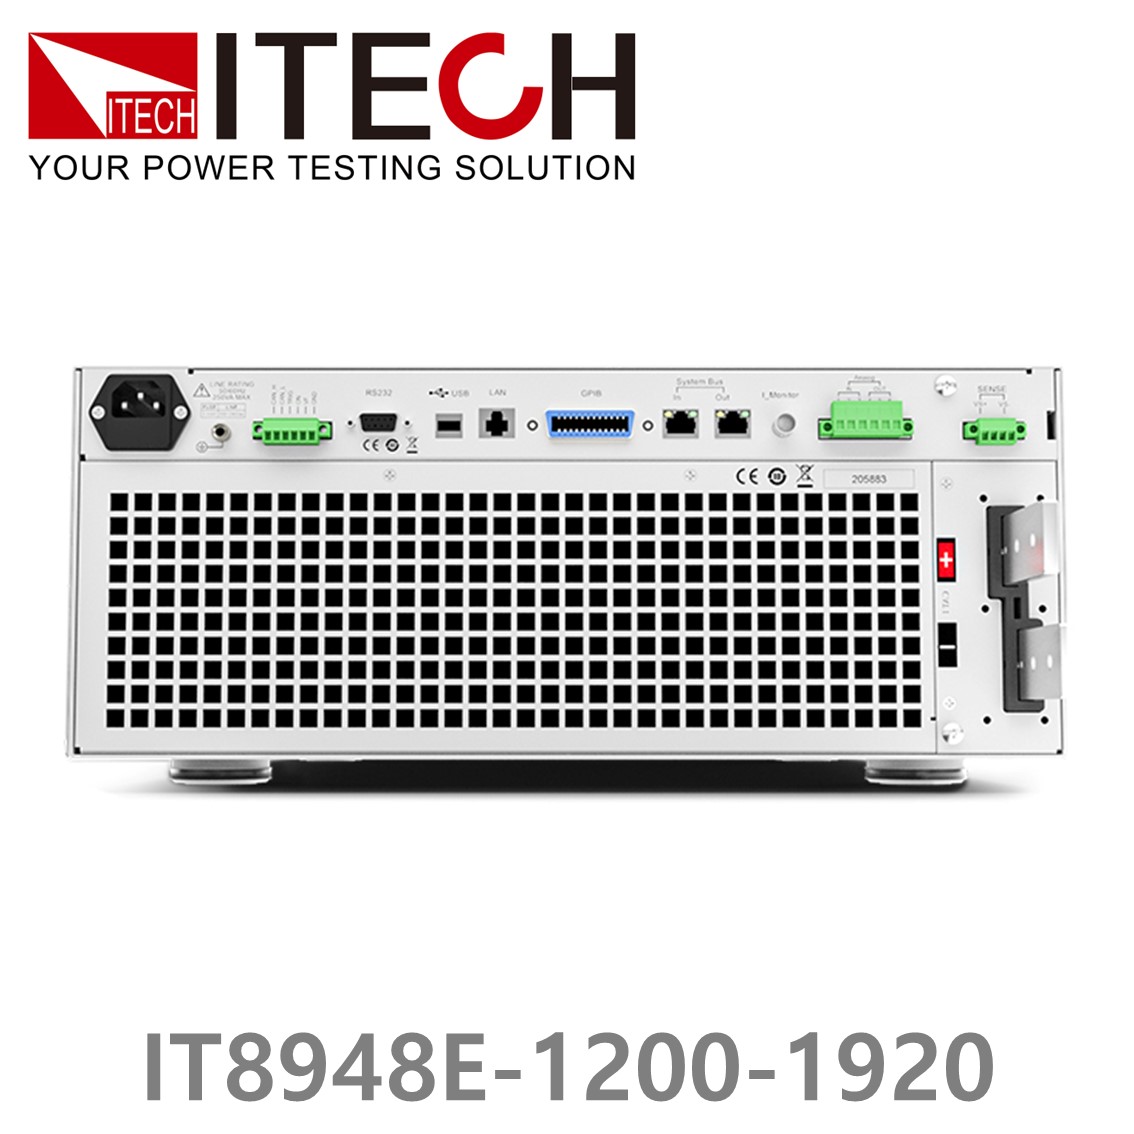 [ ITECH ] IT8948E-1200-1920  고성능 고전력 DC 전자로드 1200V/1920A/48kW (37U)